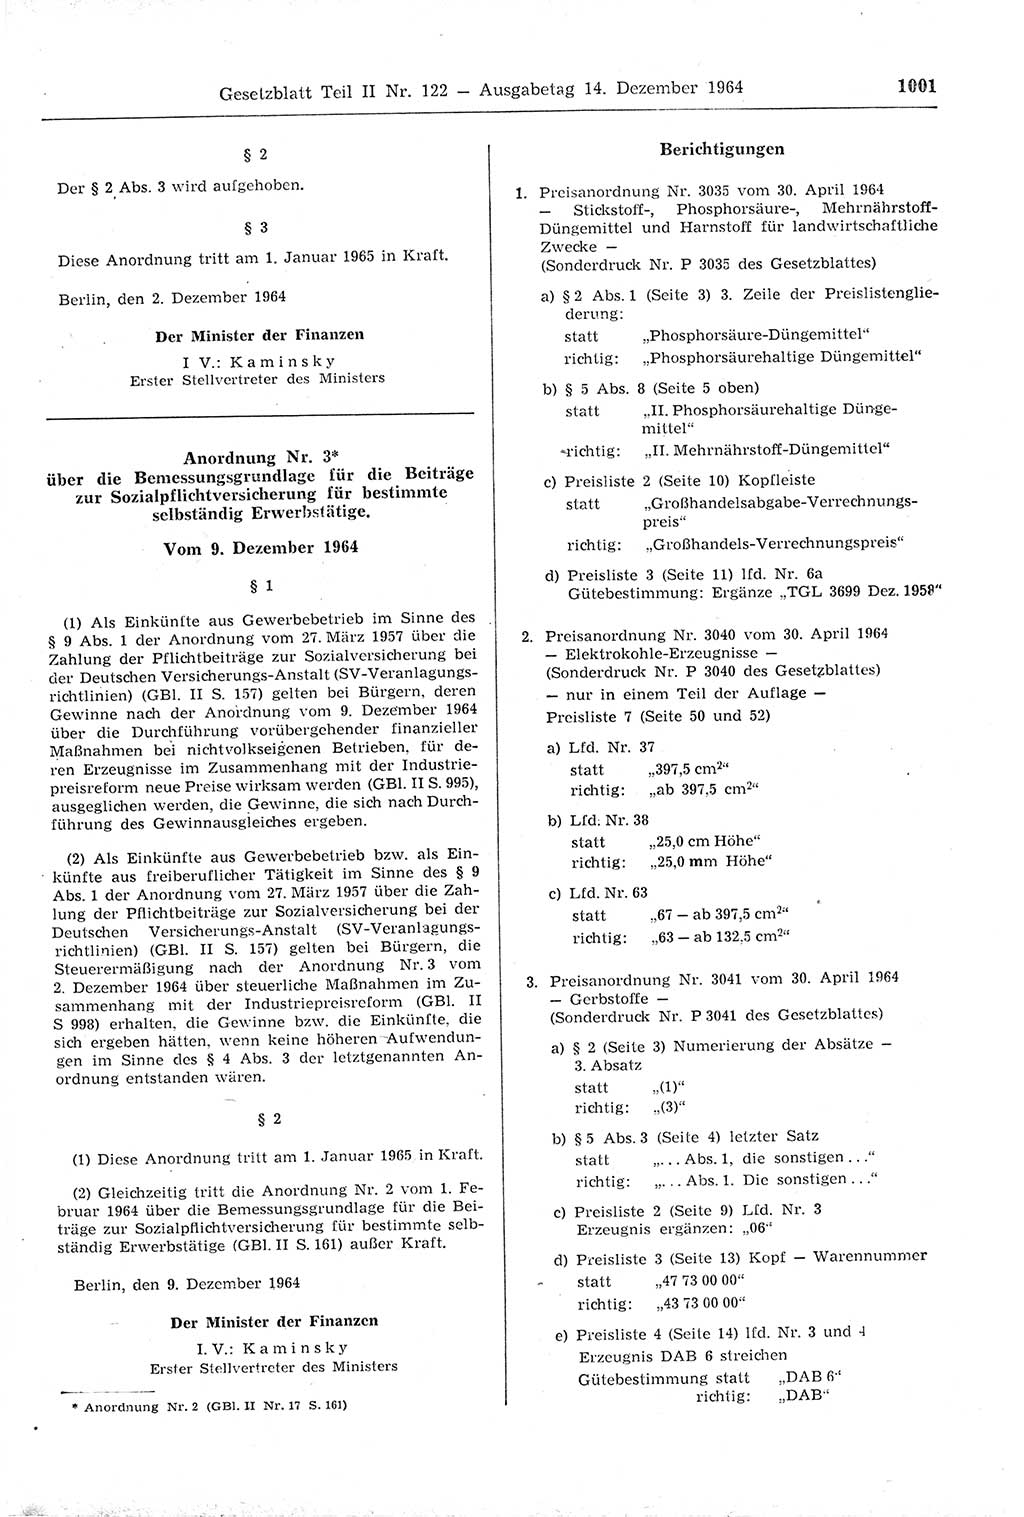 Gesetzblatt (GBl.) der Deutschen Demokratischen Republik (DDR) Teil ⅠⅠ 1964, Seite 1001 (GBl. DDR ⅠⅠ 1964, S. 1001)